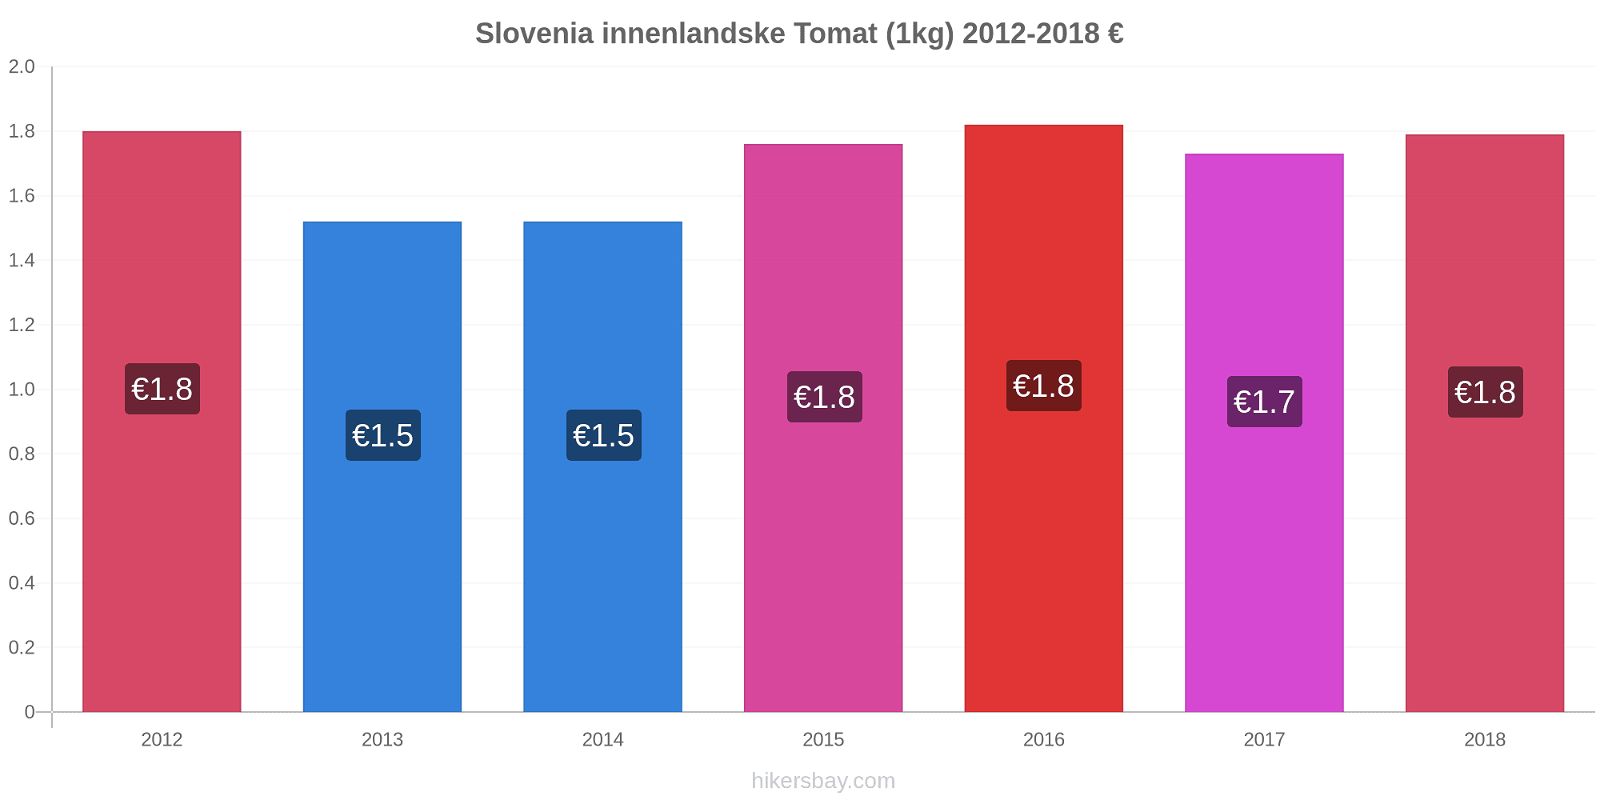 Slovenia innenlandske prisendringer Tomat (1kg) hikersbay.com